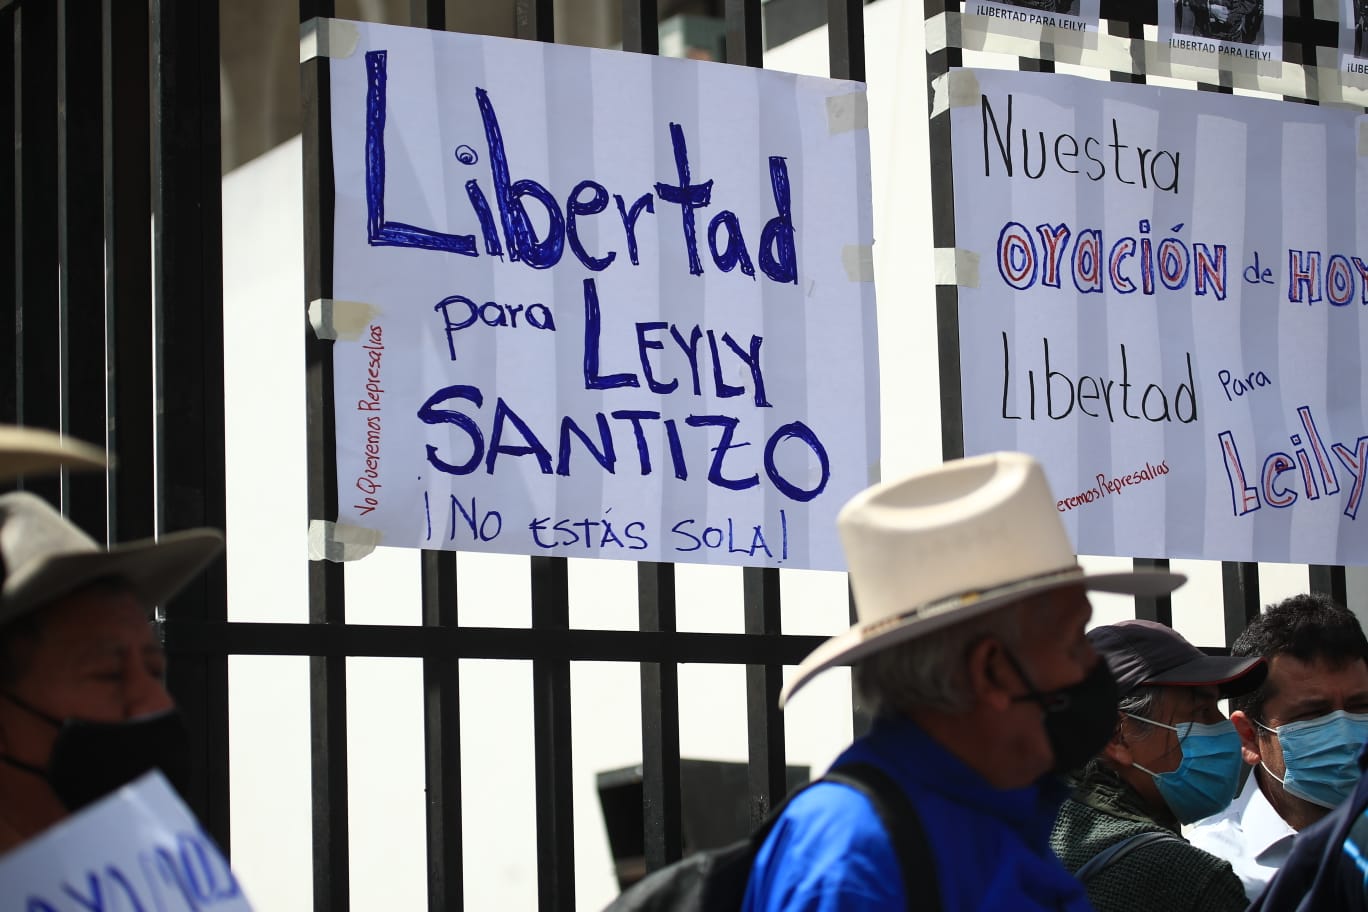 Representantes de varias organizaciones exigen la liberación de Leily Santizo y Eva Xiomara Sosa, abogadas que formaron parte de la lucha anticorrupción que envío tras las rejas a políticos y empresarios. (Foto Prensa Libre: Carlos Hernández)